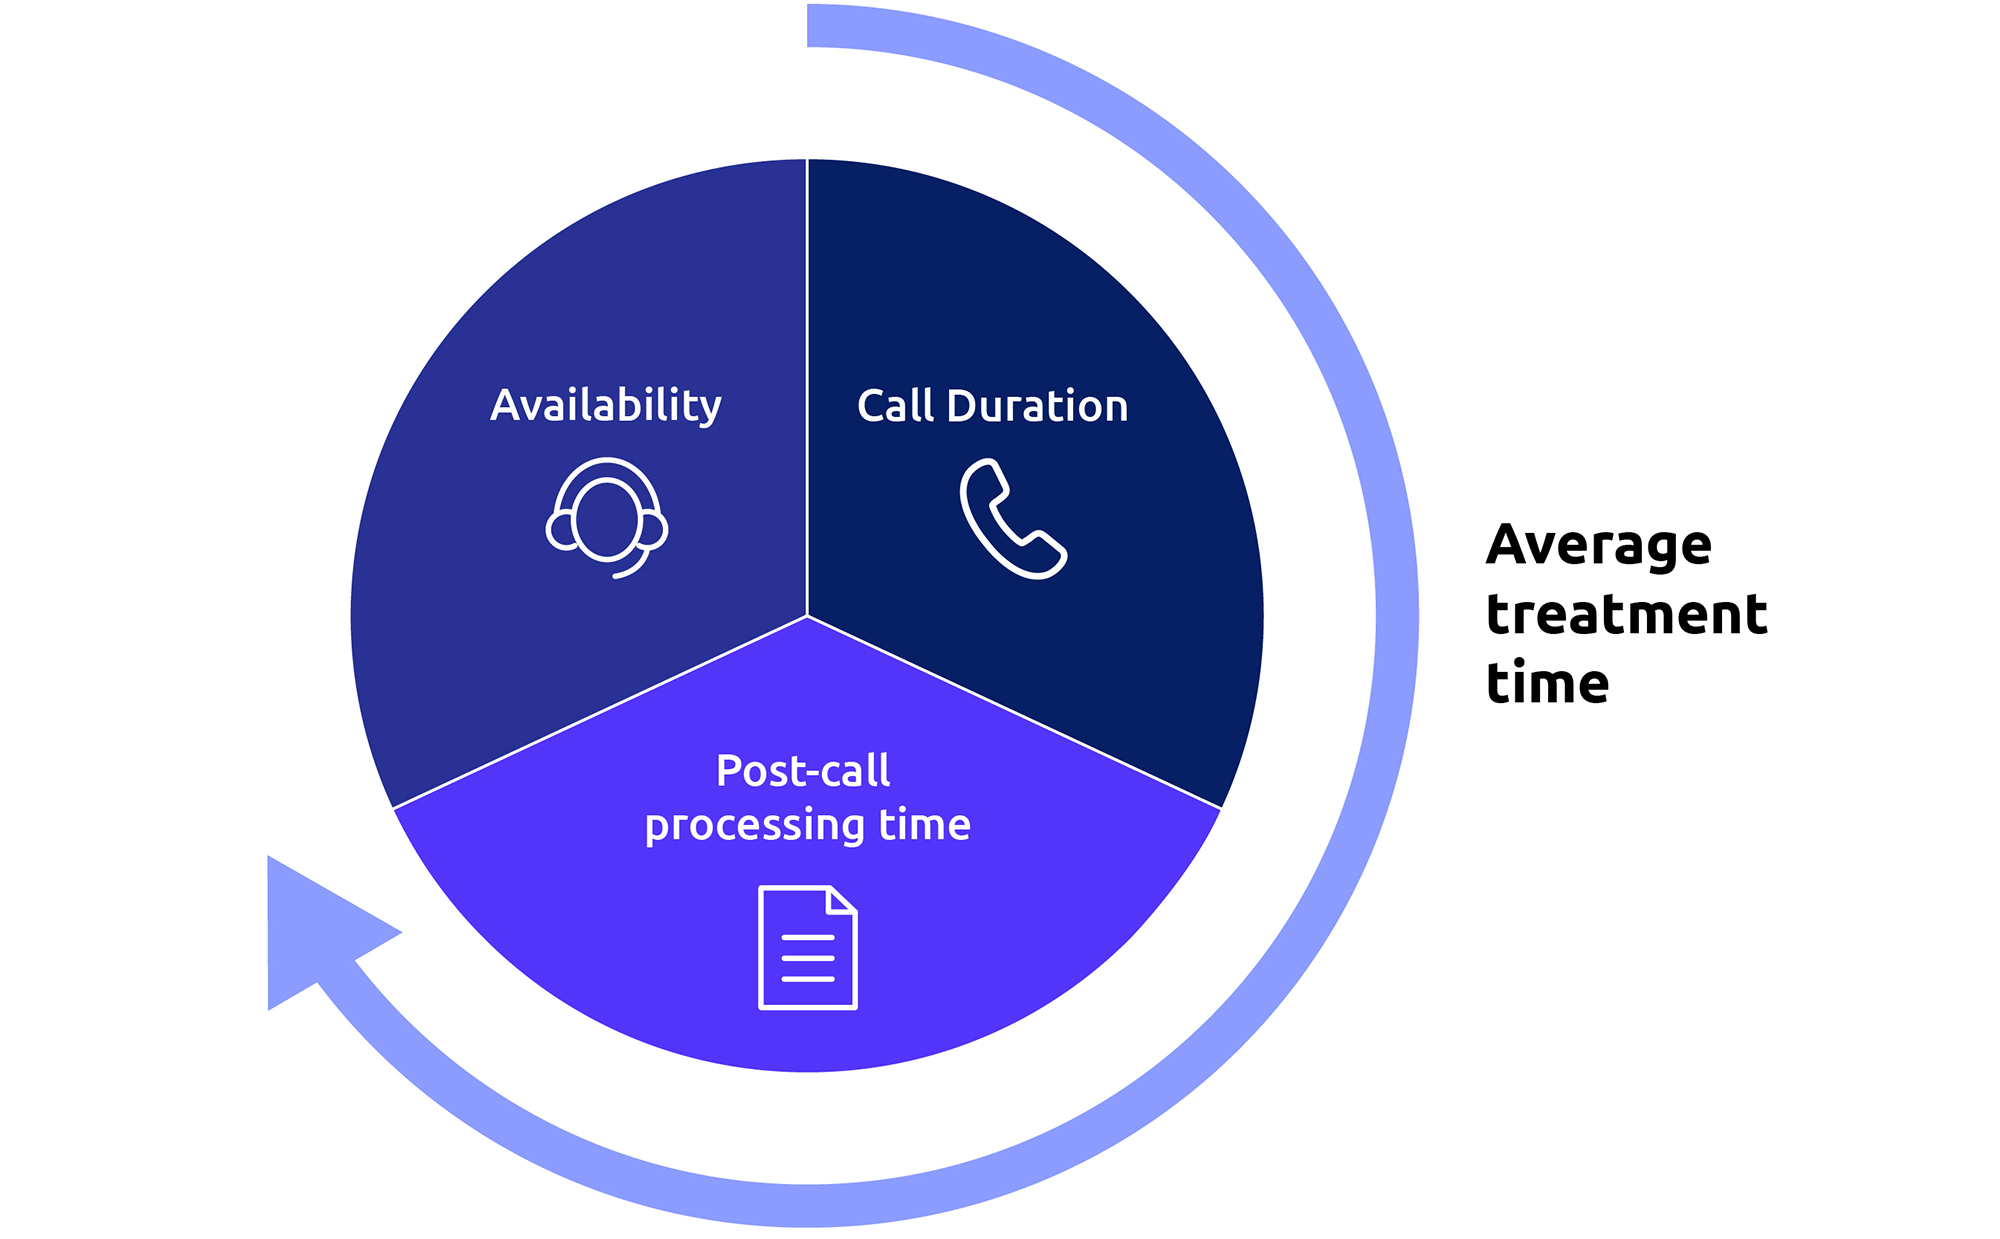 Como calcular o tempo médio de tratamento em call centers